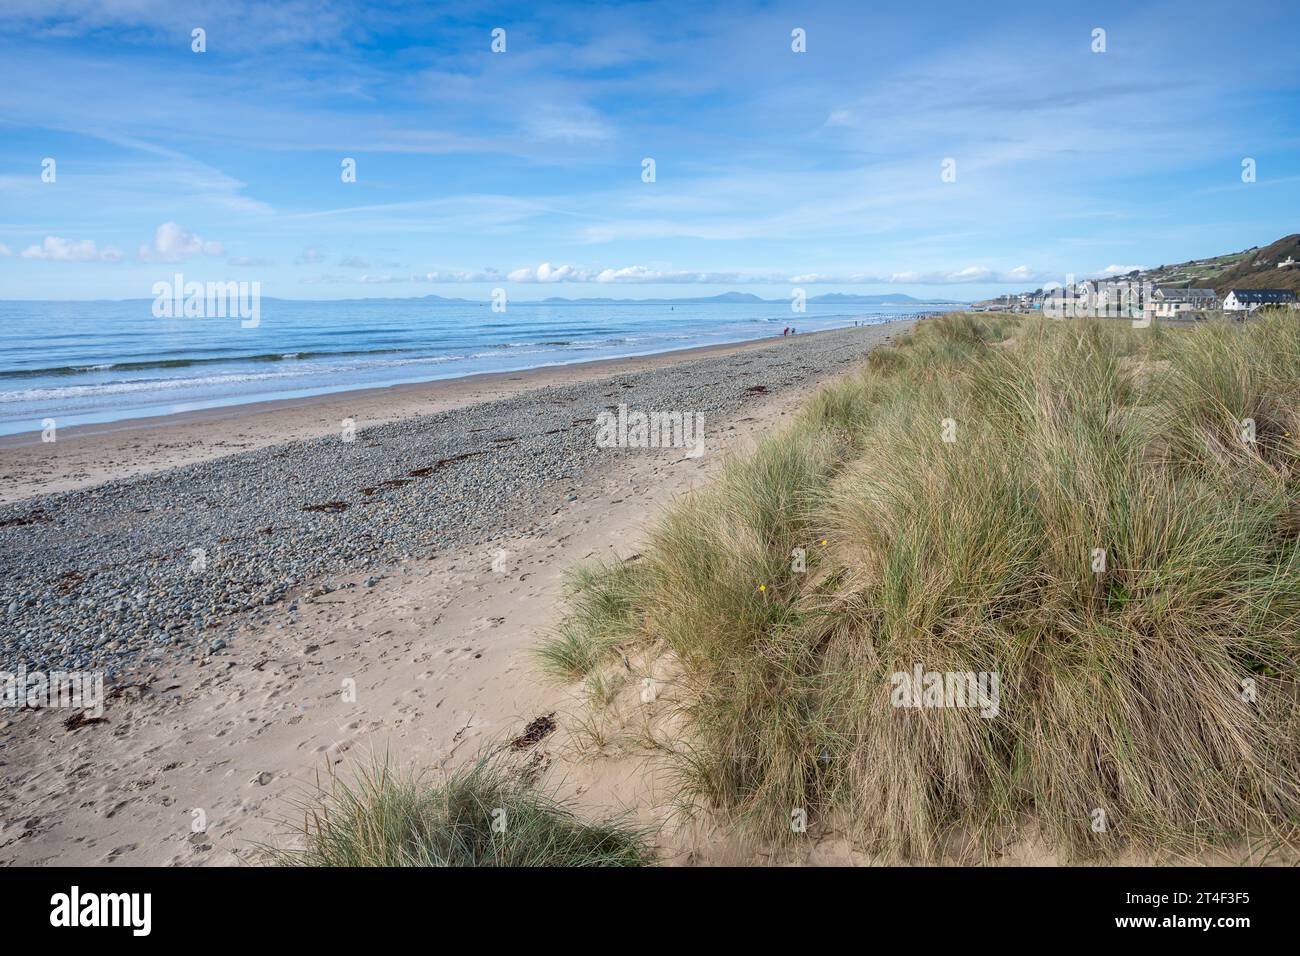 Une image HDR des cailloux et du sable sur la plage de Barmouth, soutenue par l'herbe des dunes. Banque D'Images